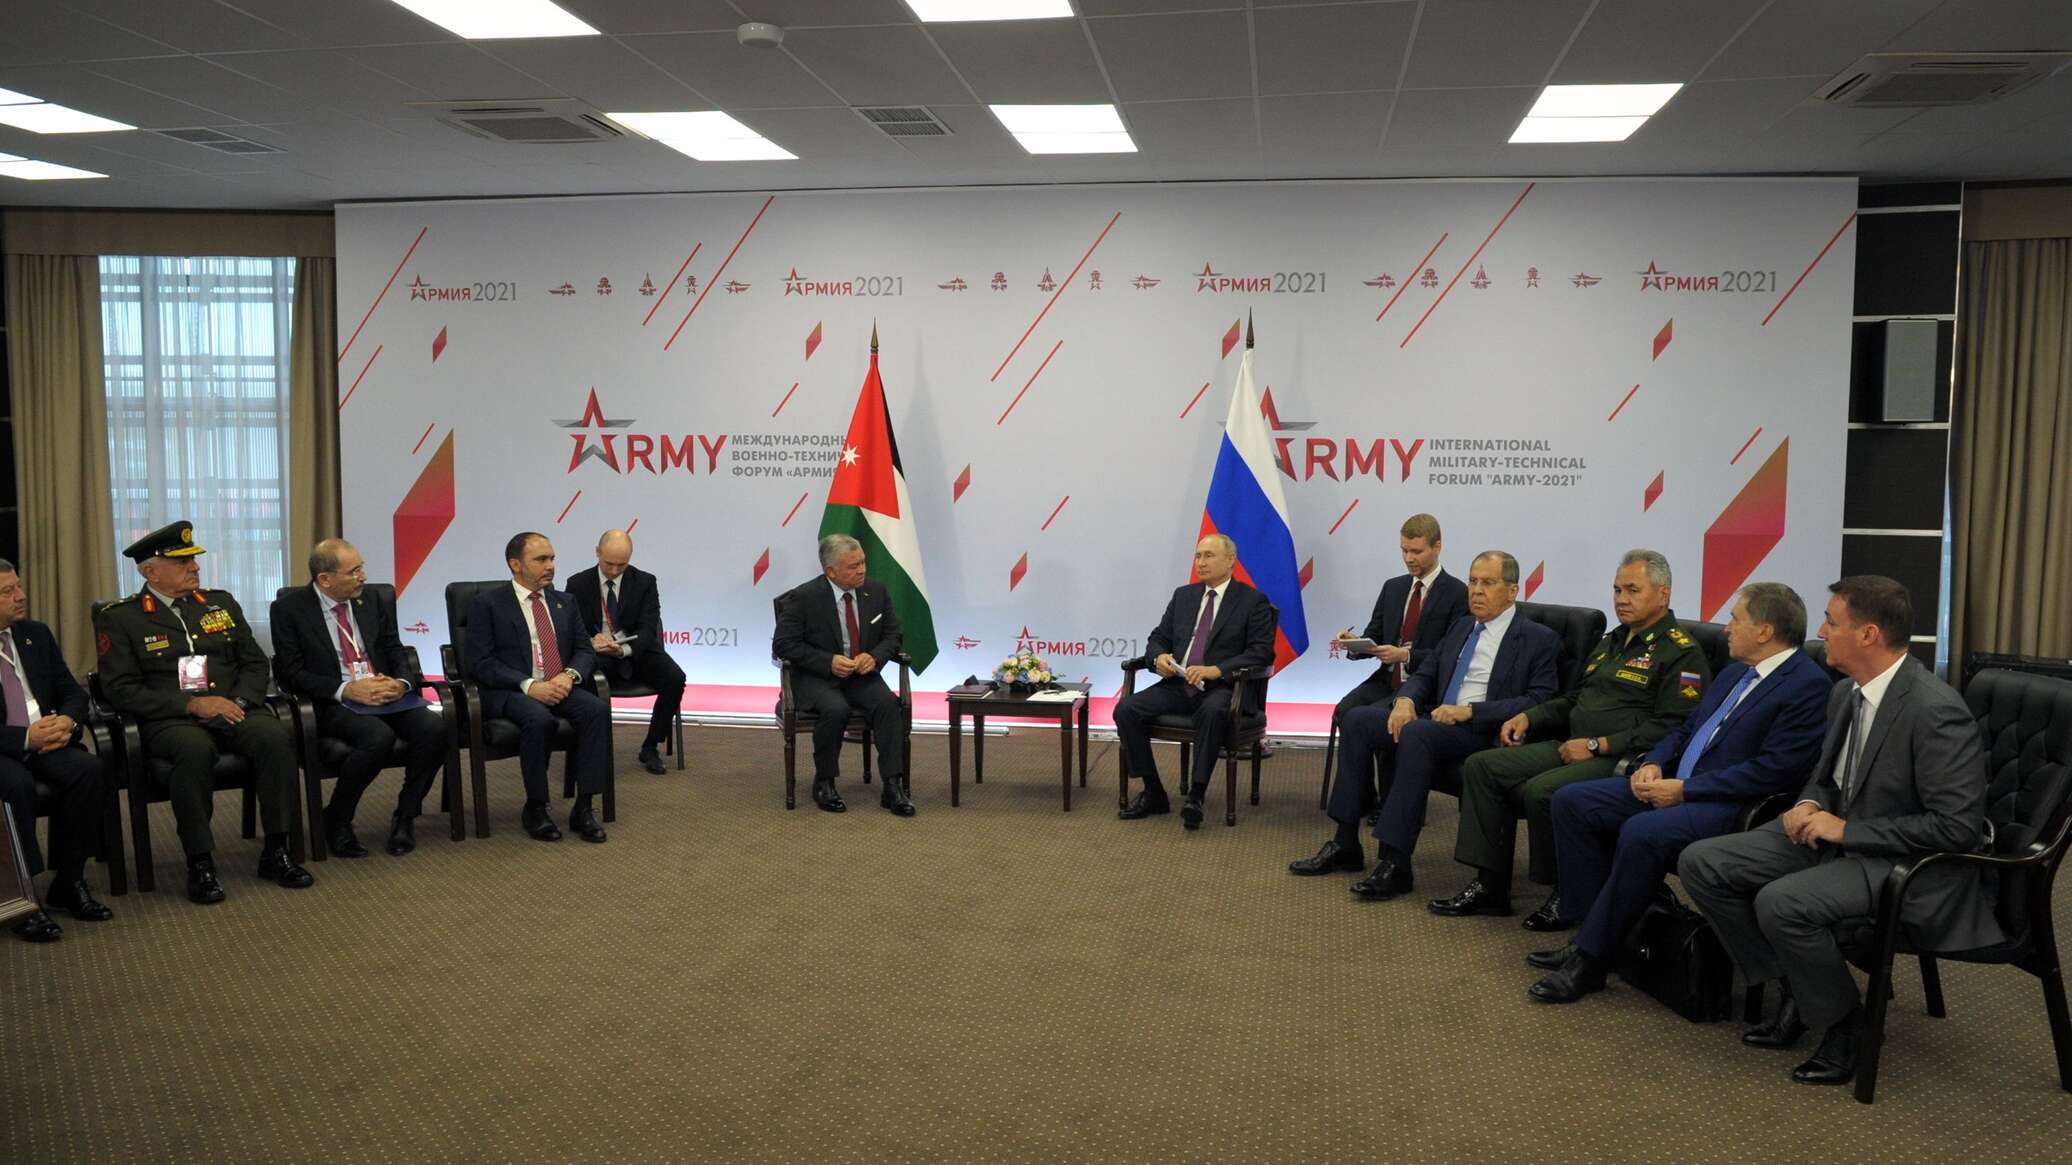 مسؤول أردني: التنسيق مع روسيا جنب المملكة آثار النزاع السوري ونتطلع لمزيد من التعاون